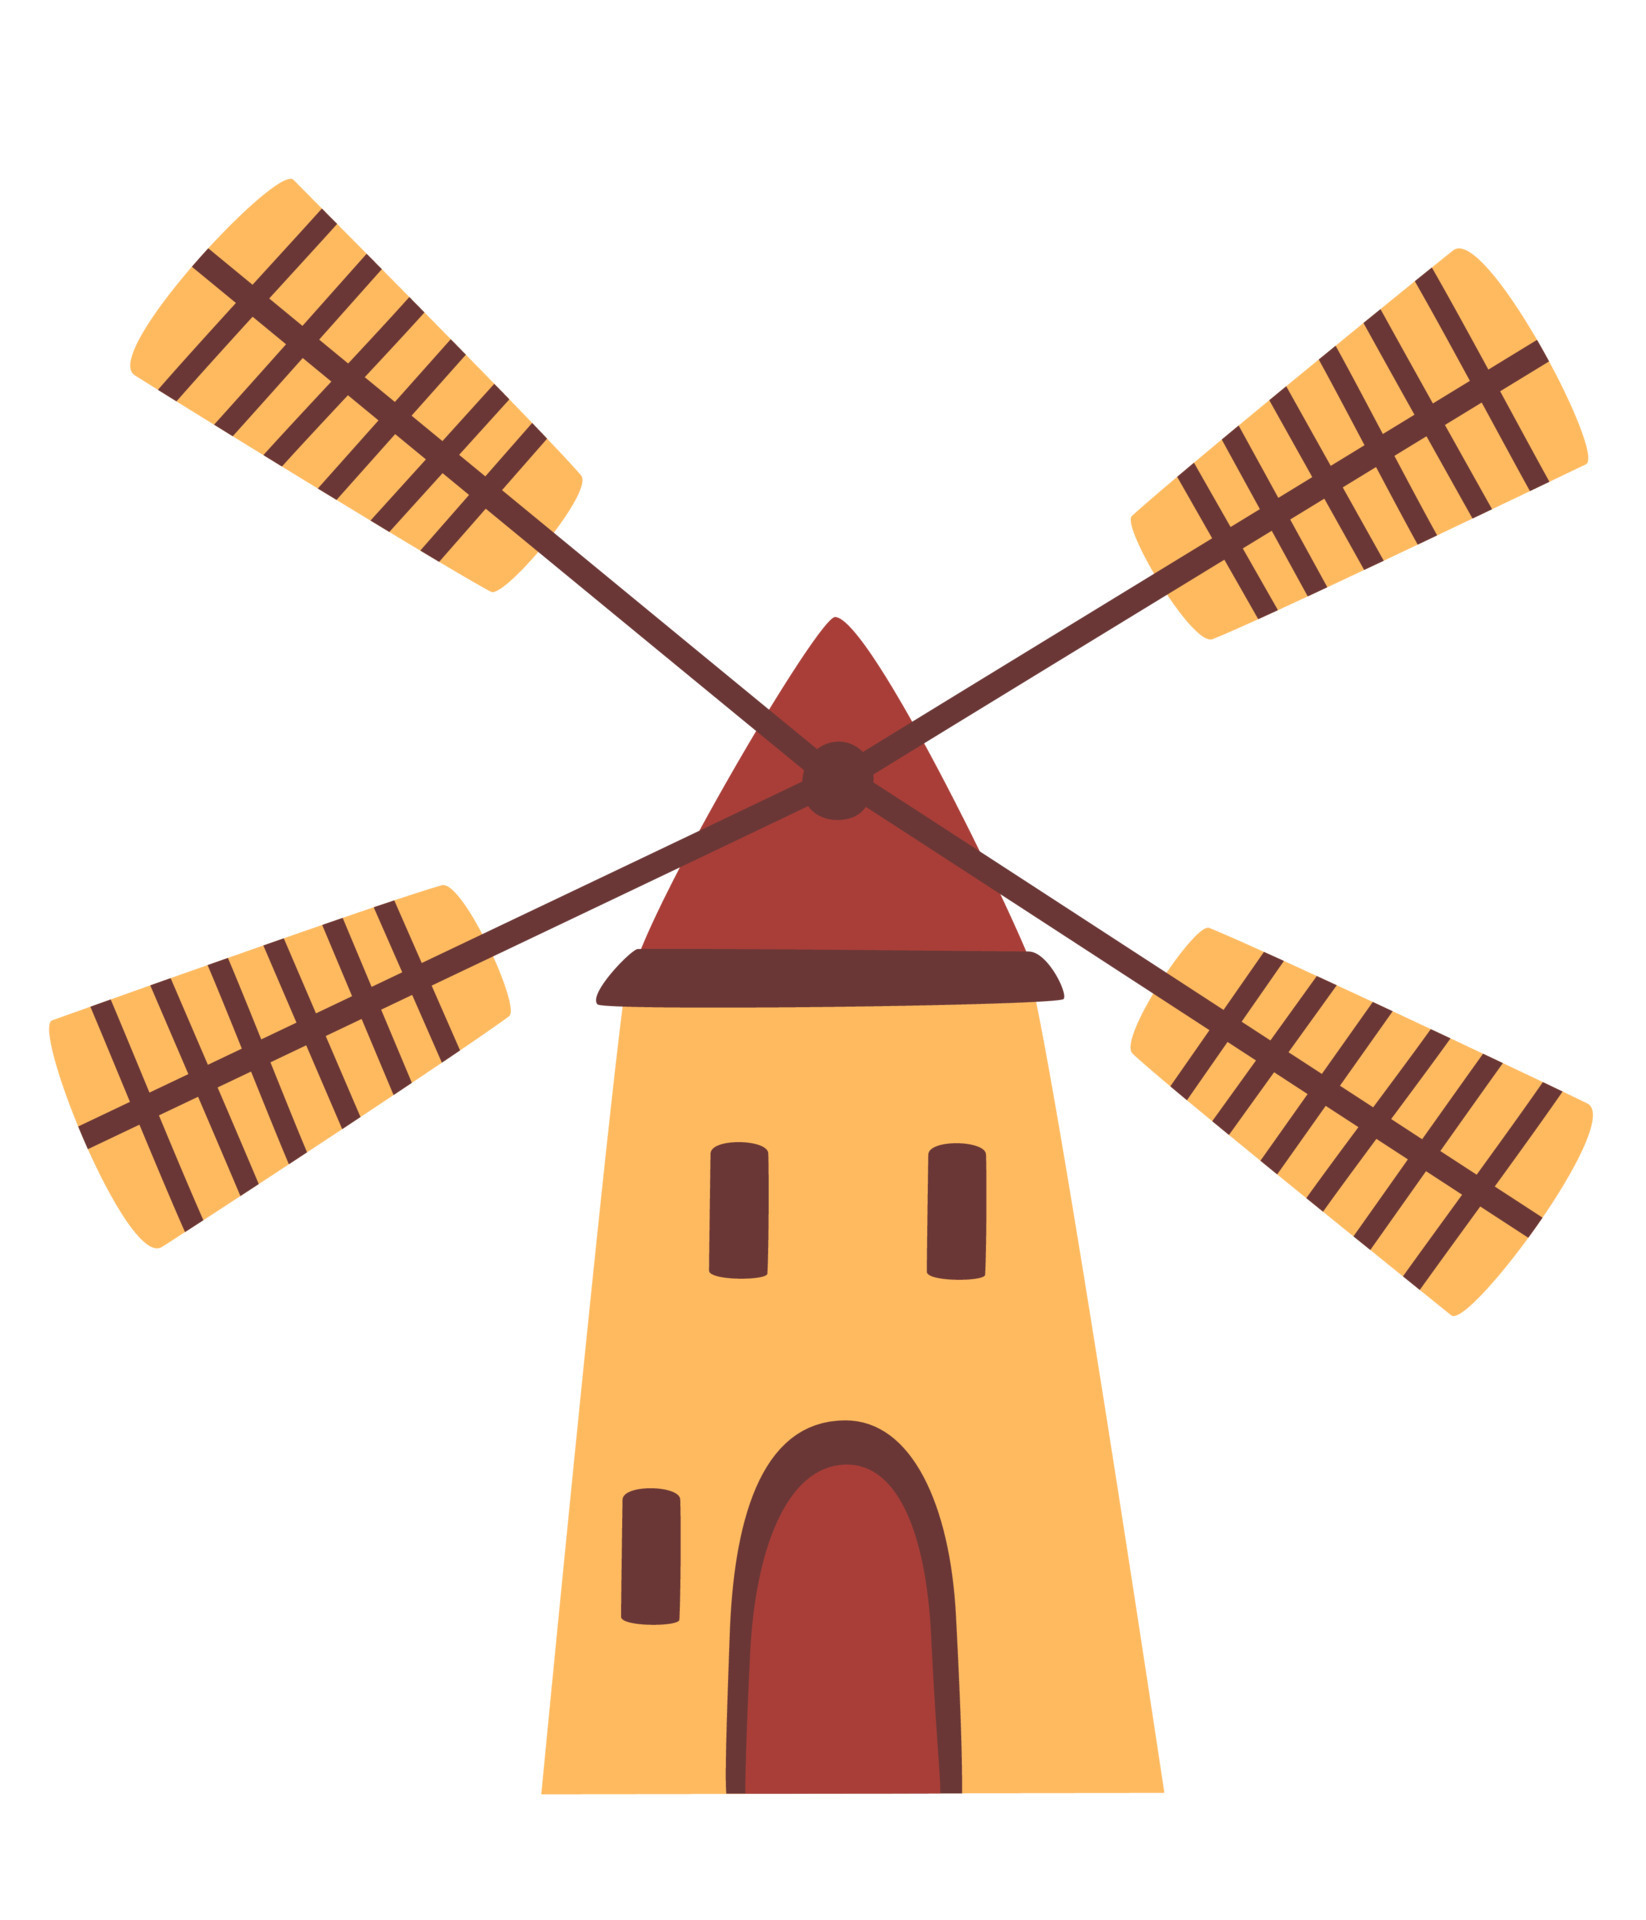 Moinho de vento, ilustração gravada do esboço desenhado do moinho